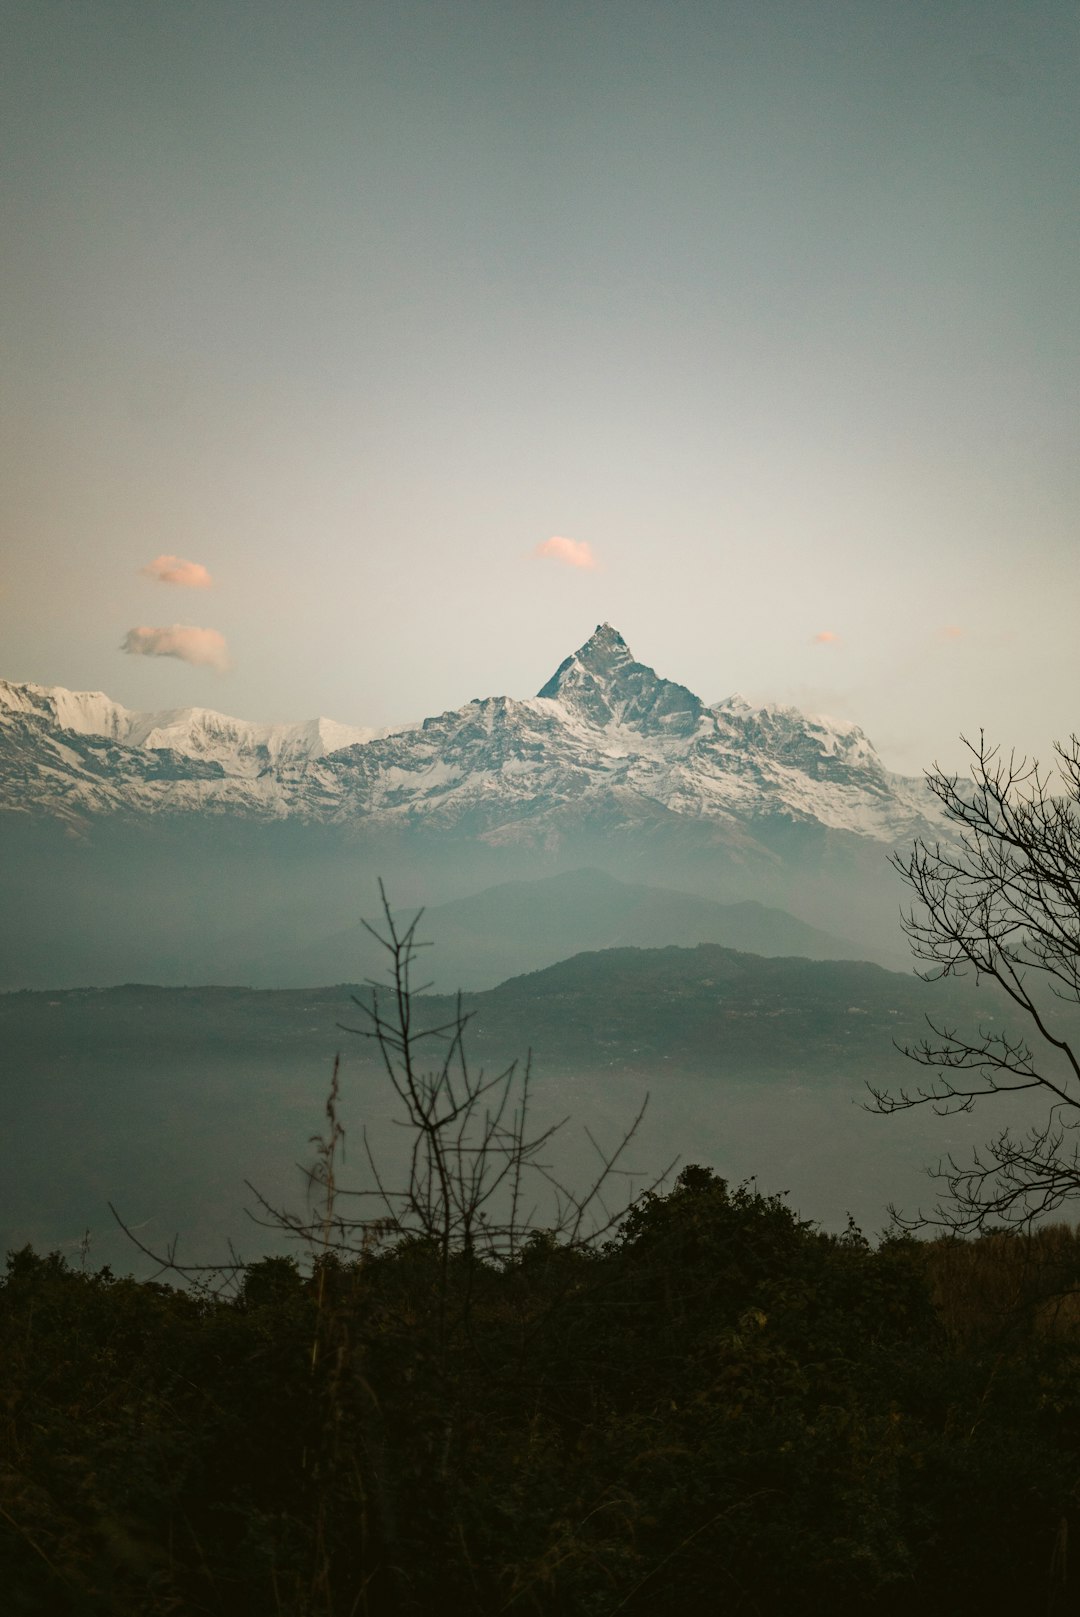 Mountain range photo spot Pumdi Bhumdi Annapurna Conservation Area